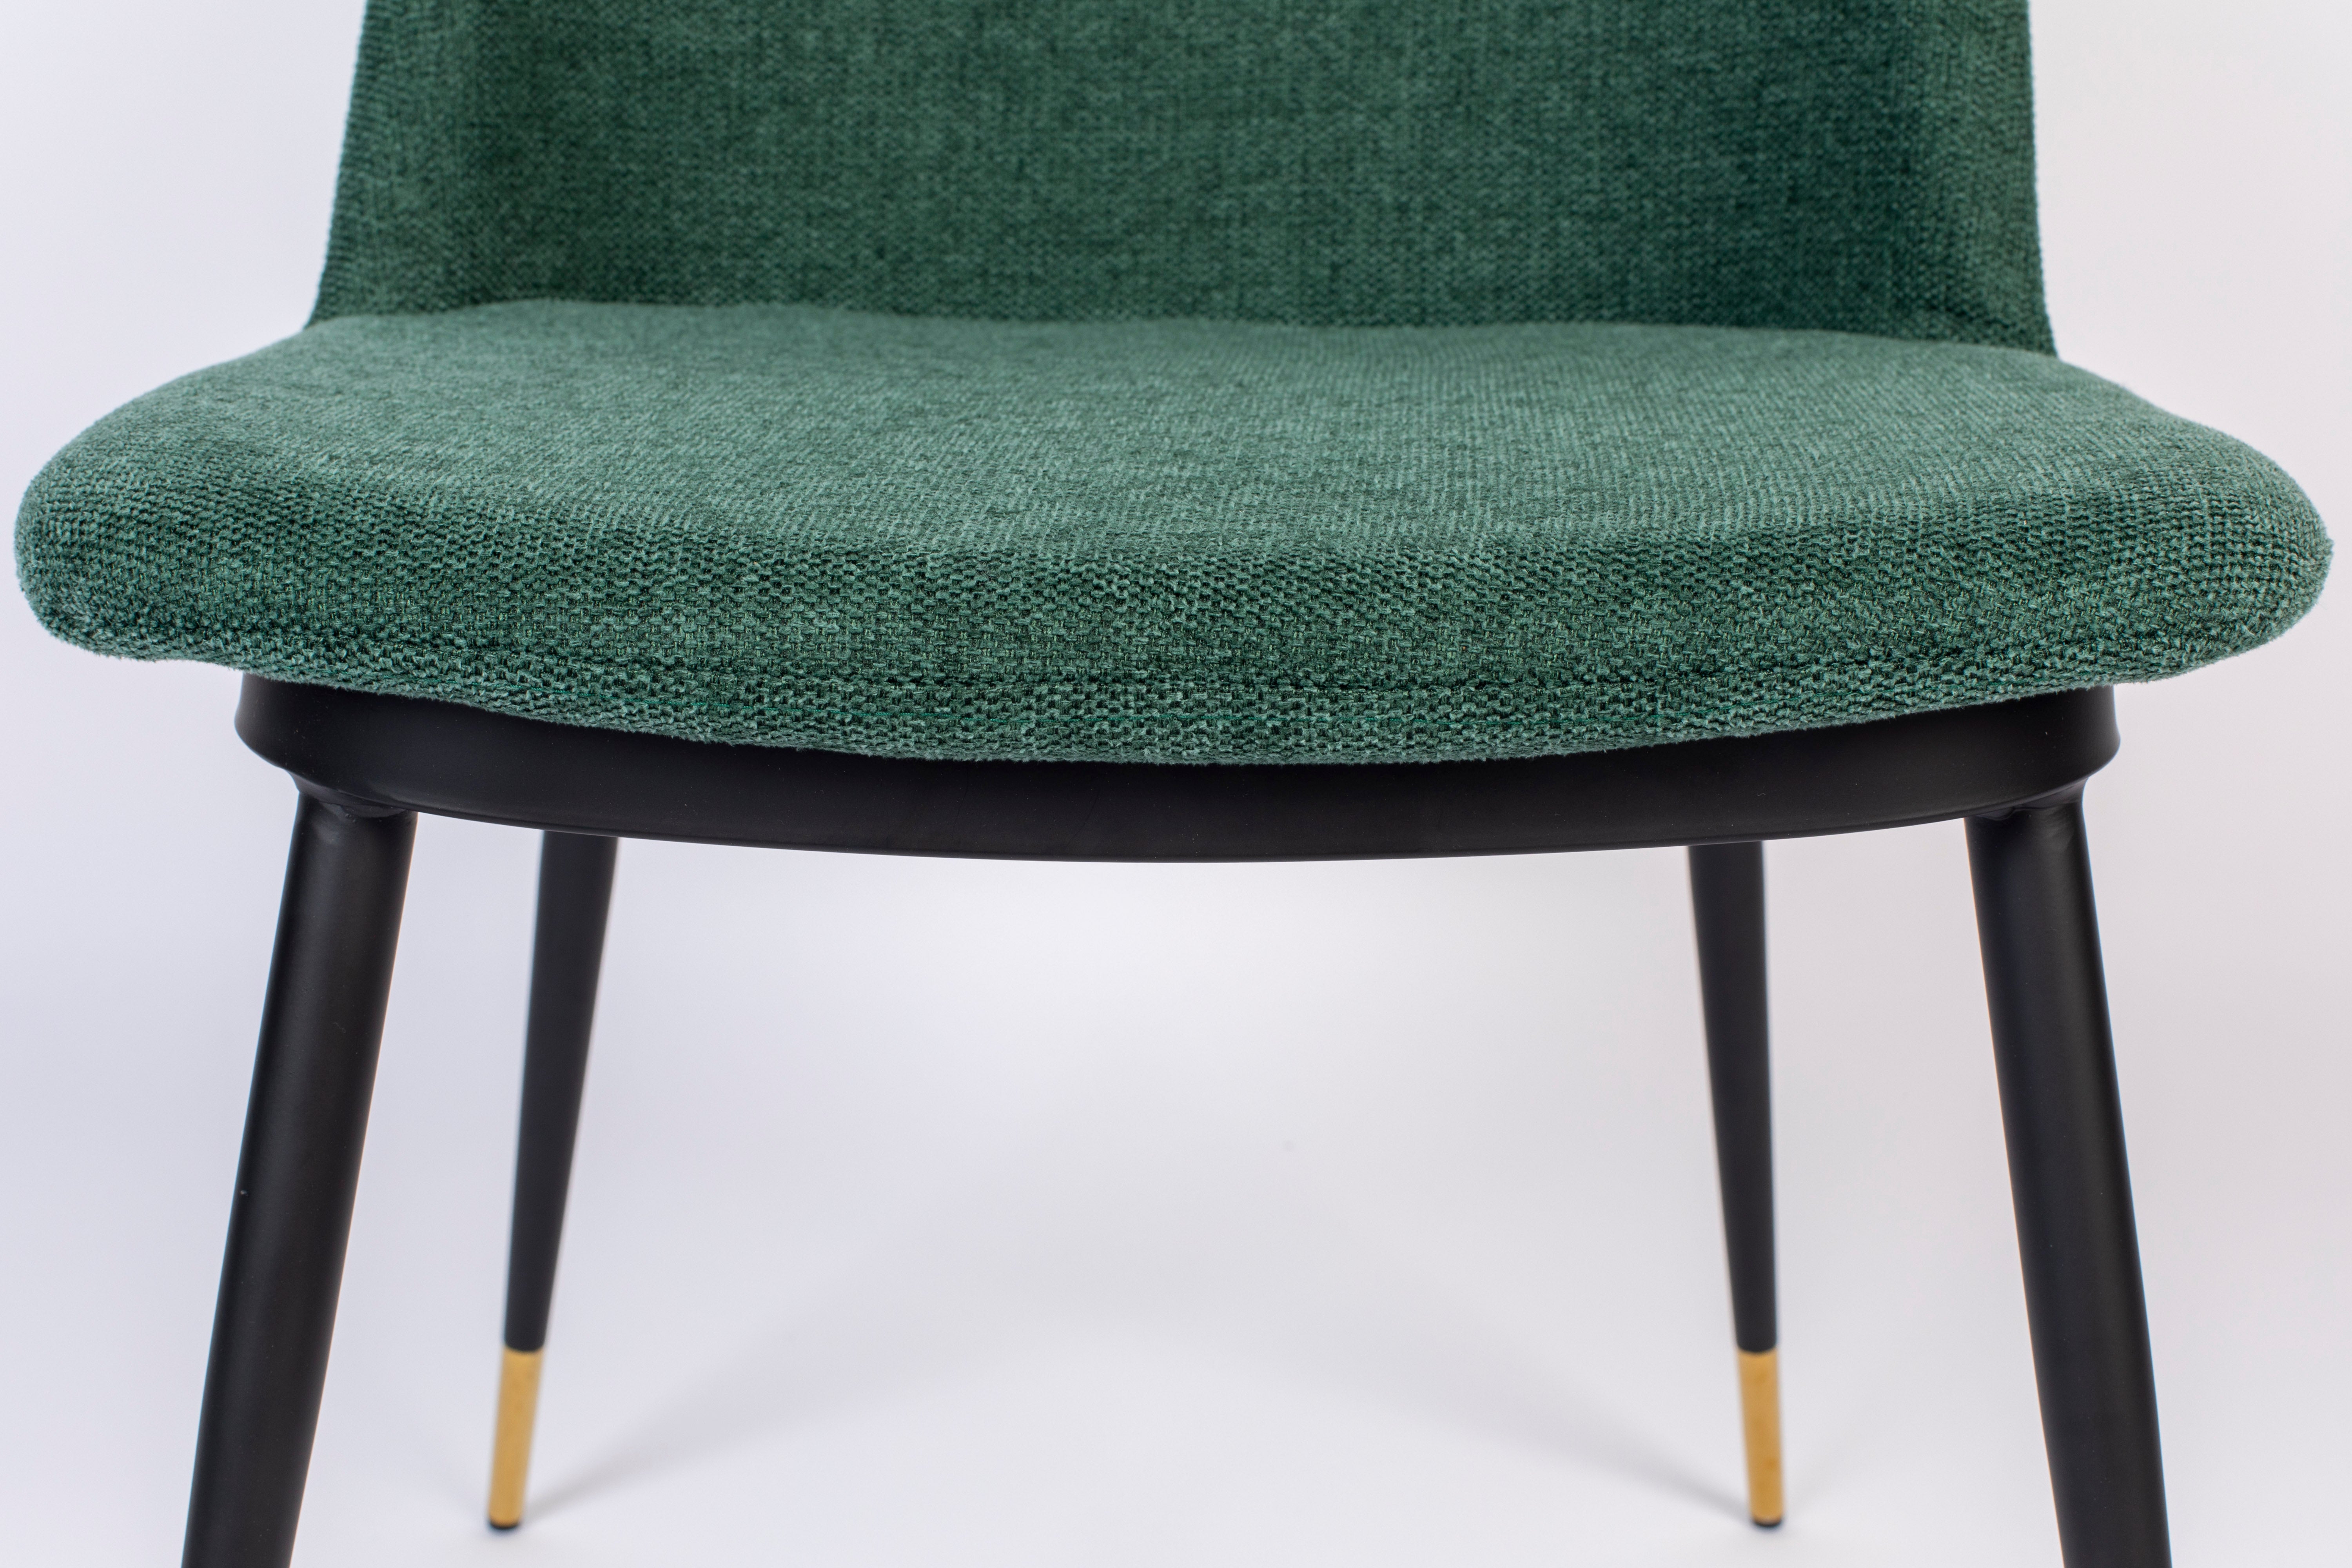 Chair lionel dark green fr